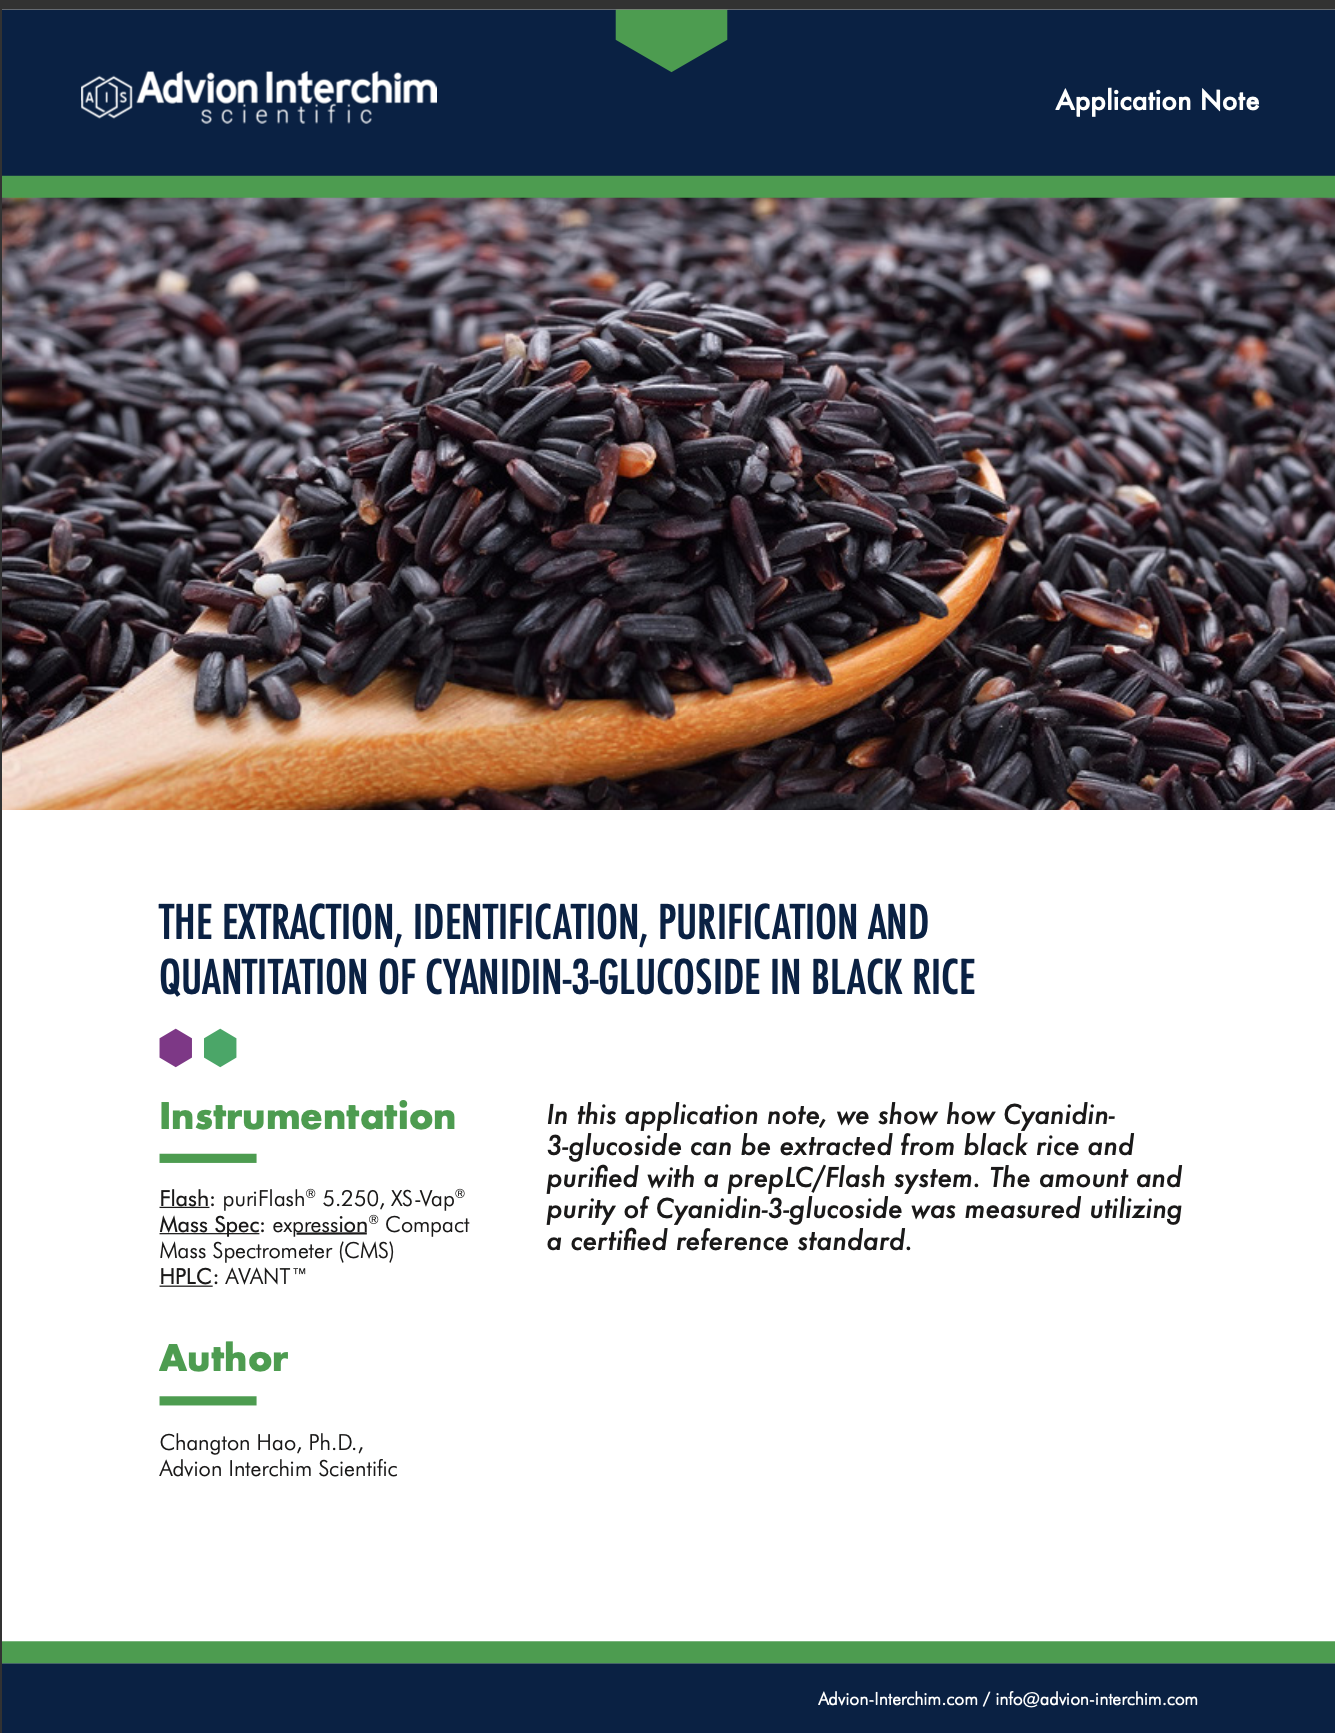 L'extraction, l'identification, la purification et la quantification du cyanidine-3-glucoside dans le riz noir